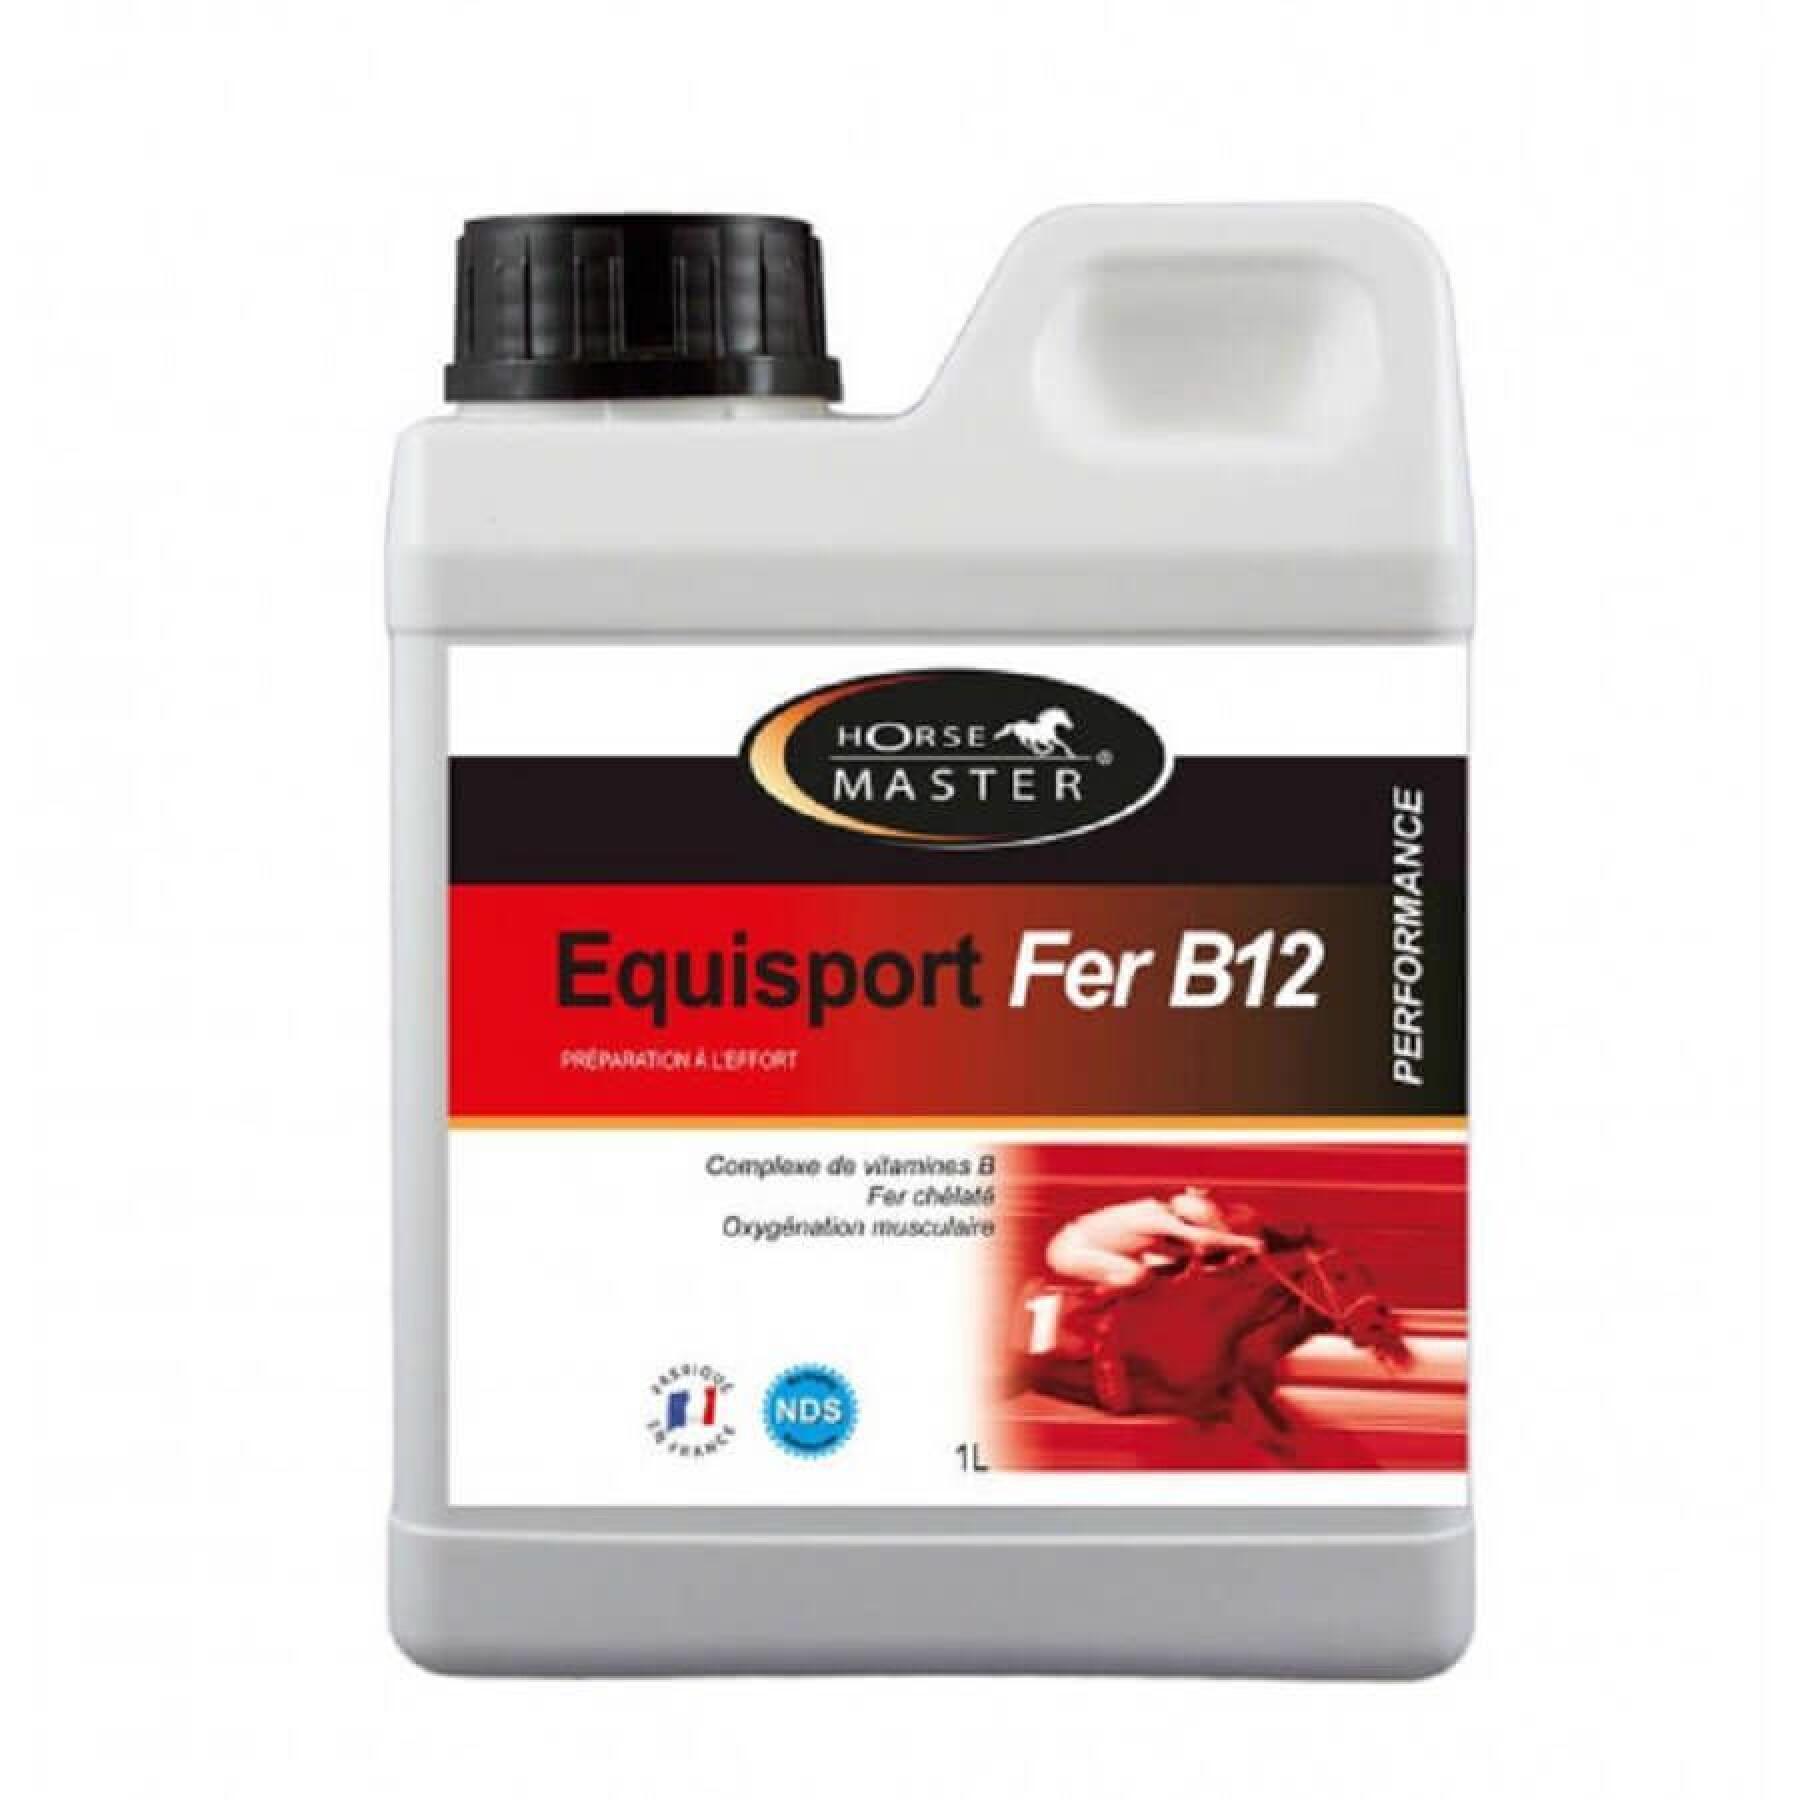 Suplemento nutricional para caballos de deporte Horse Master Equisport Fer B12